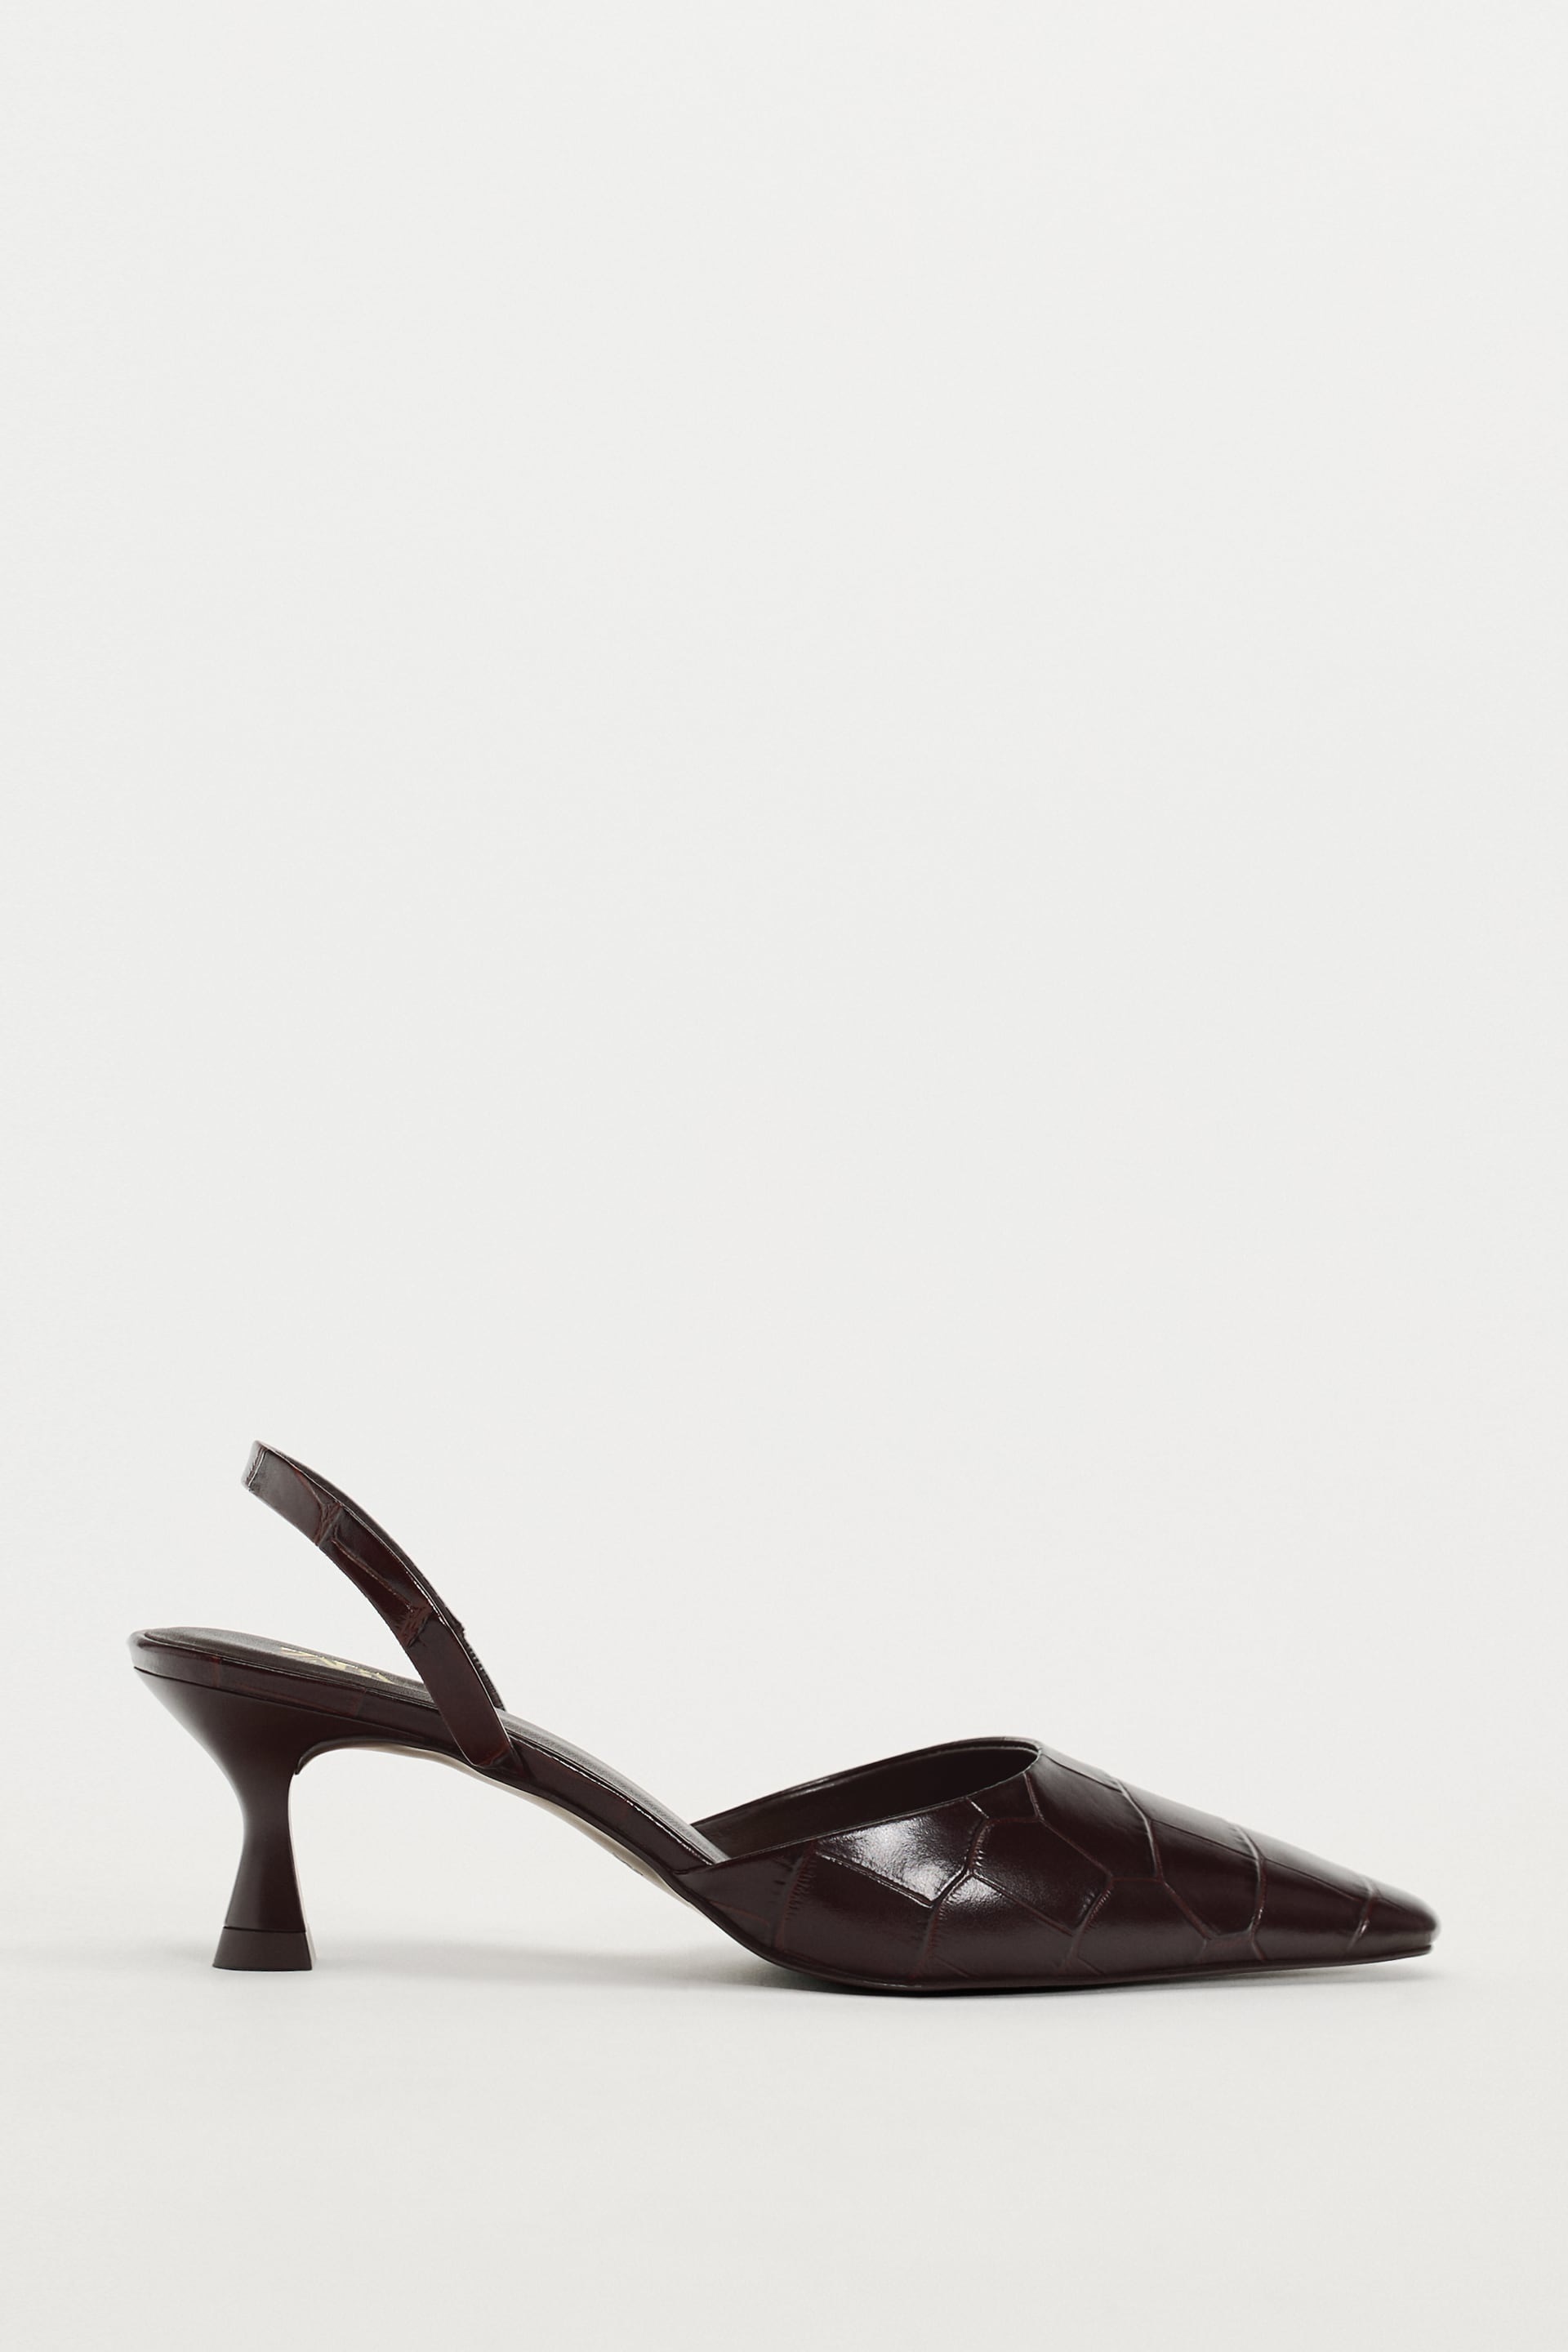 El tacn en tendencia: los zapatos kitten heel marrones ms bonitos de Zara